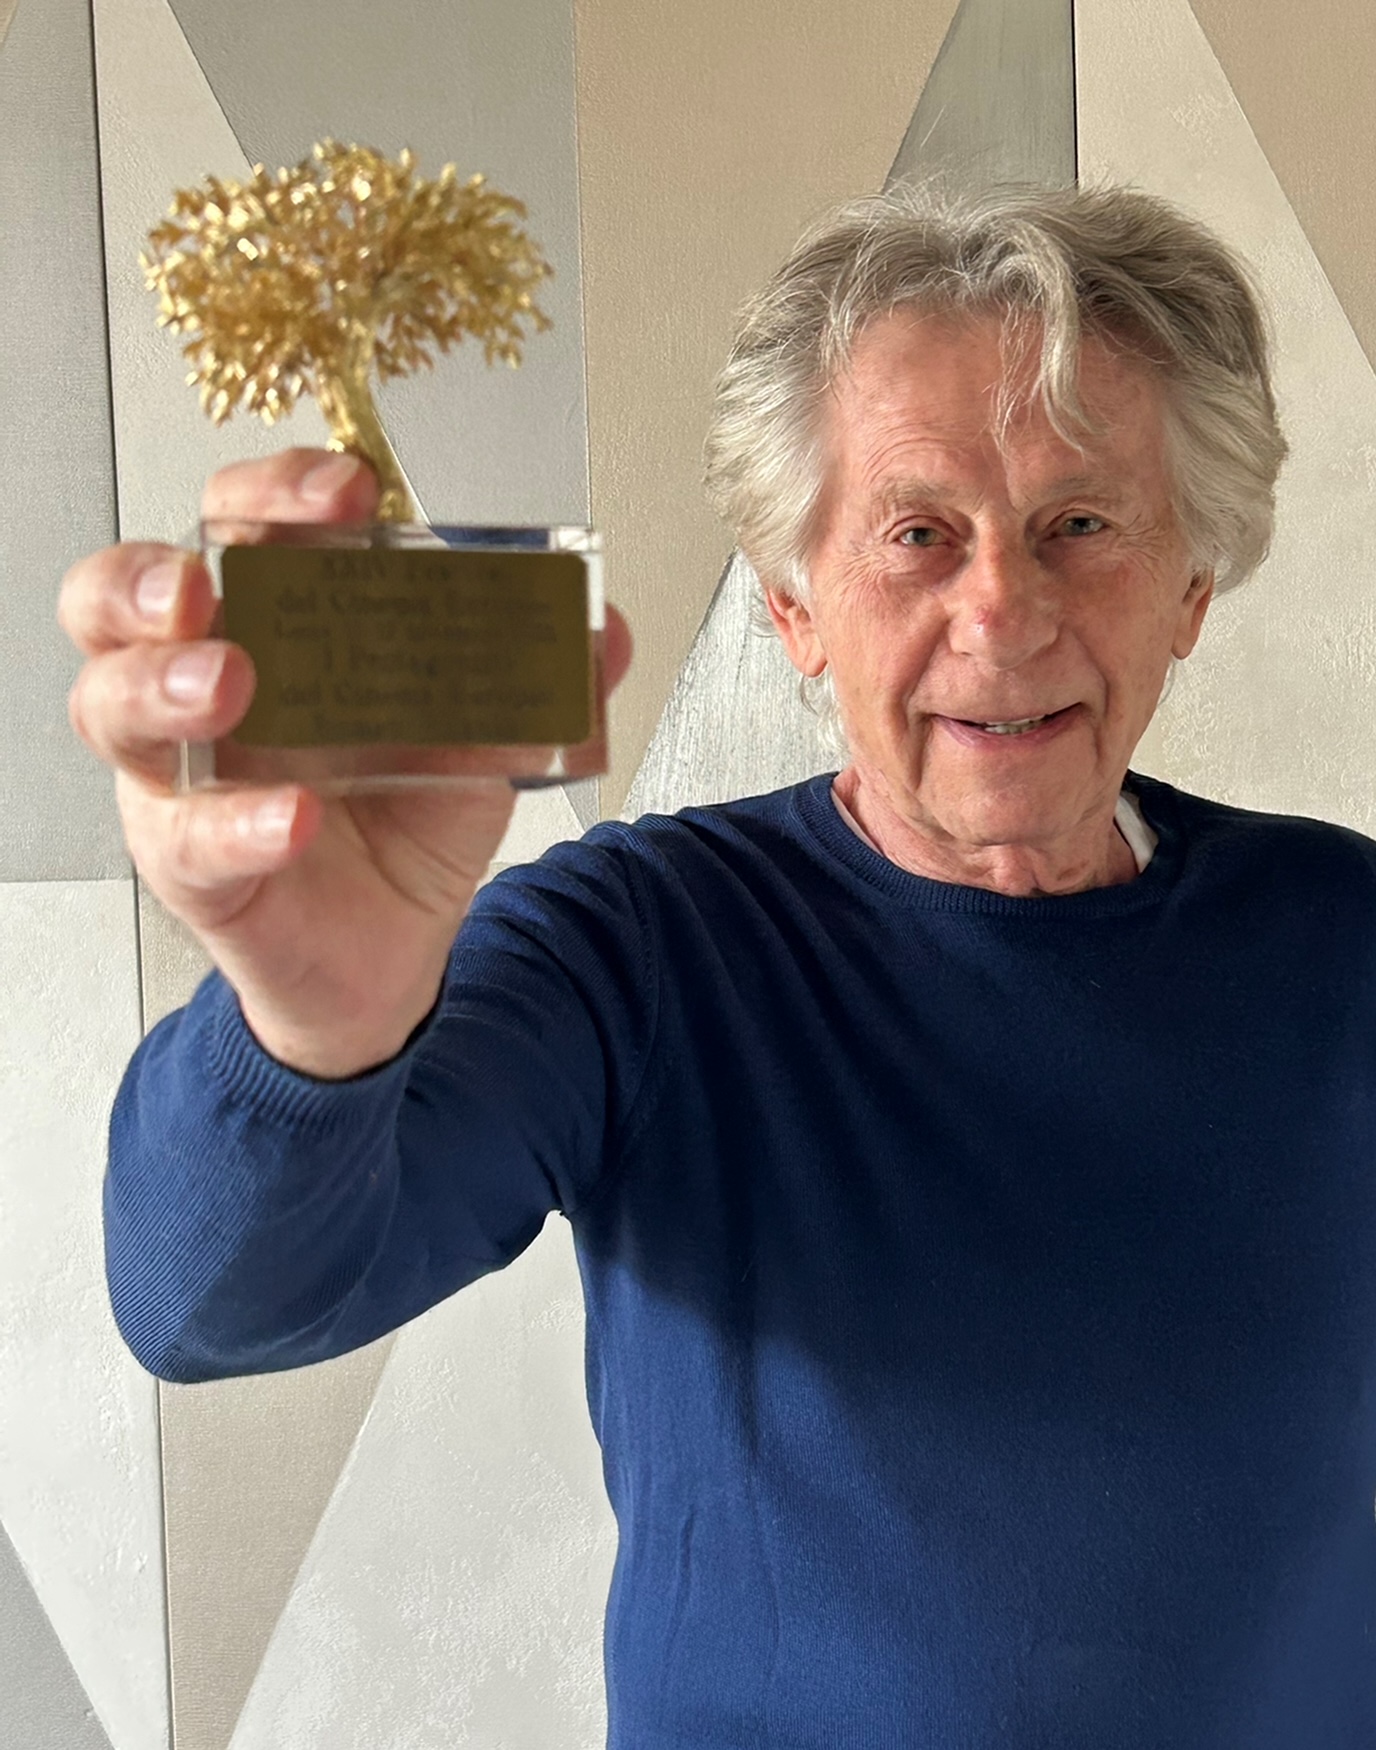 Roman Polanski è il “Protagonista del Cinema Europeo”, sezione del Festival del Cinema Europeo diretto da Alberto La Monica